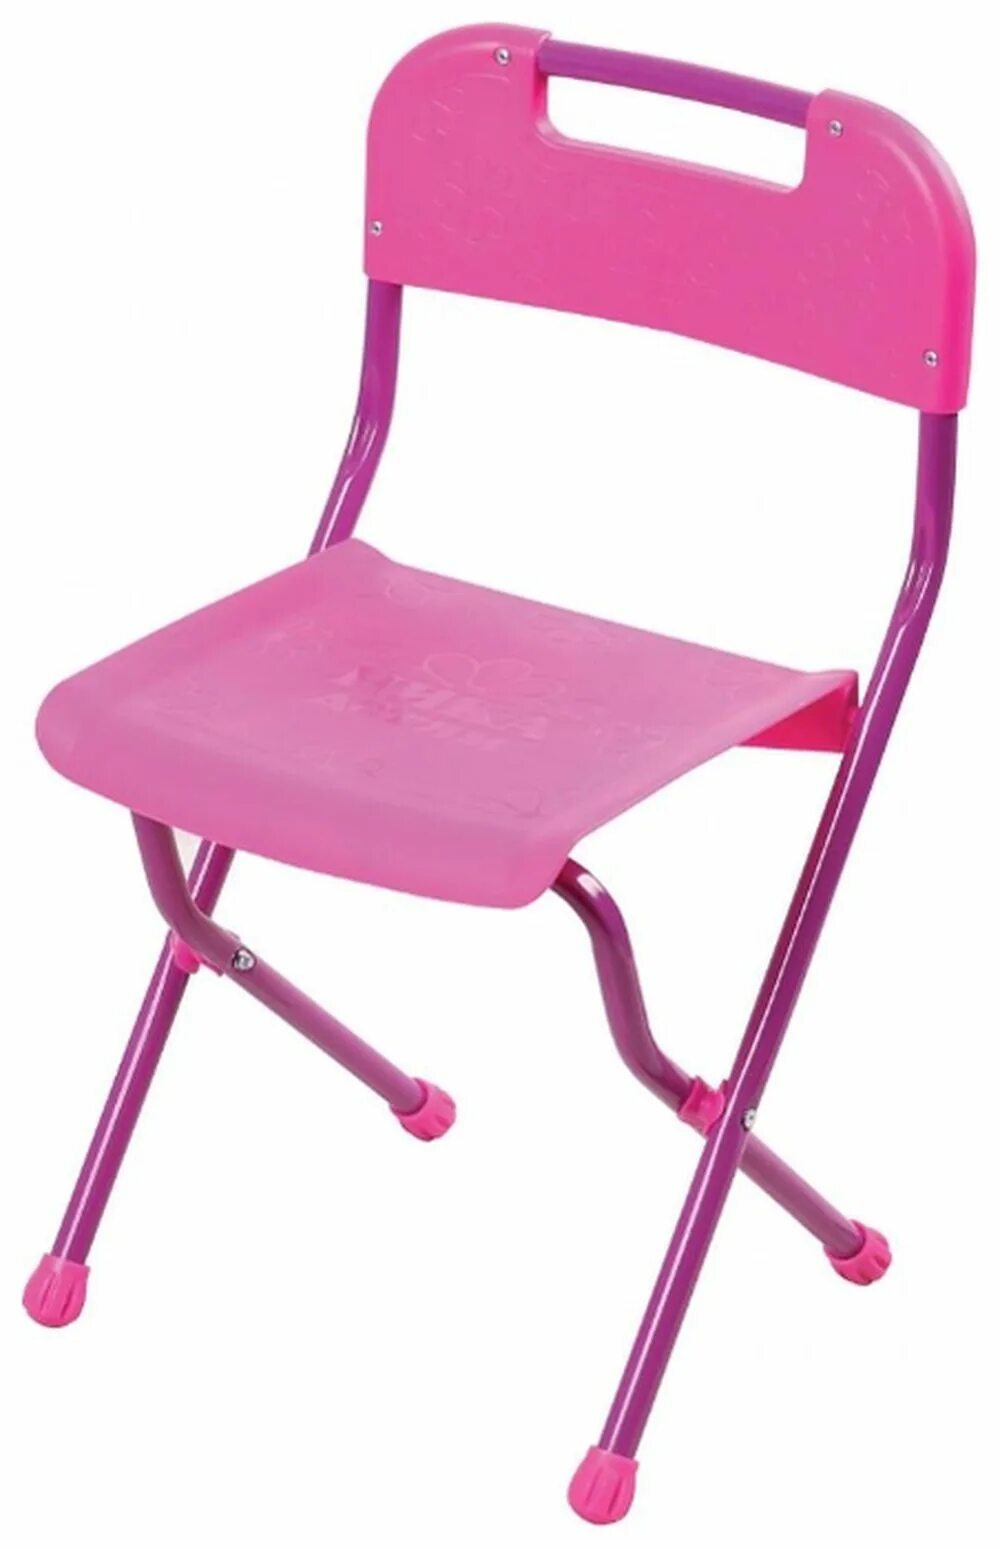 Стул Nika сту2 розовый. Детский стул купить в москве